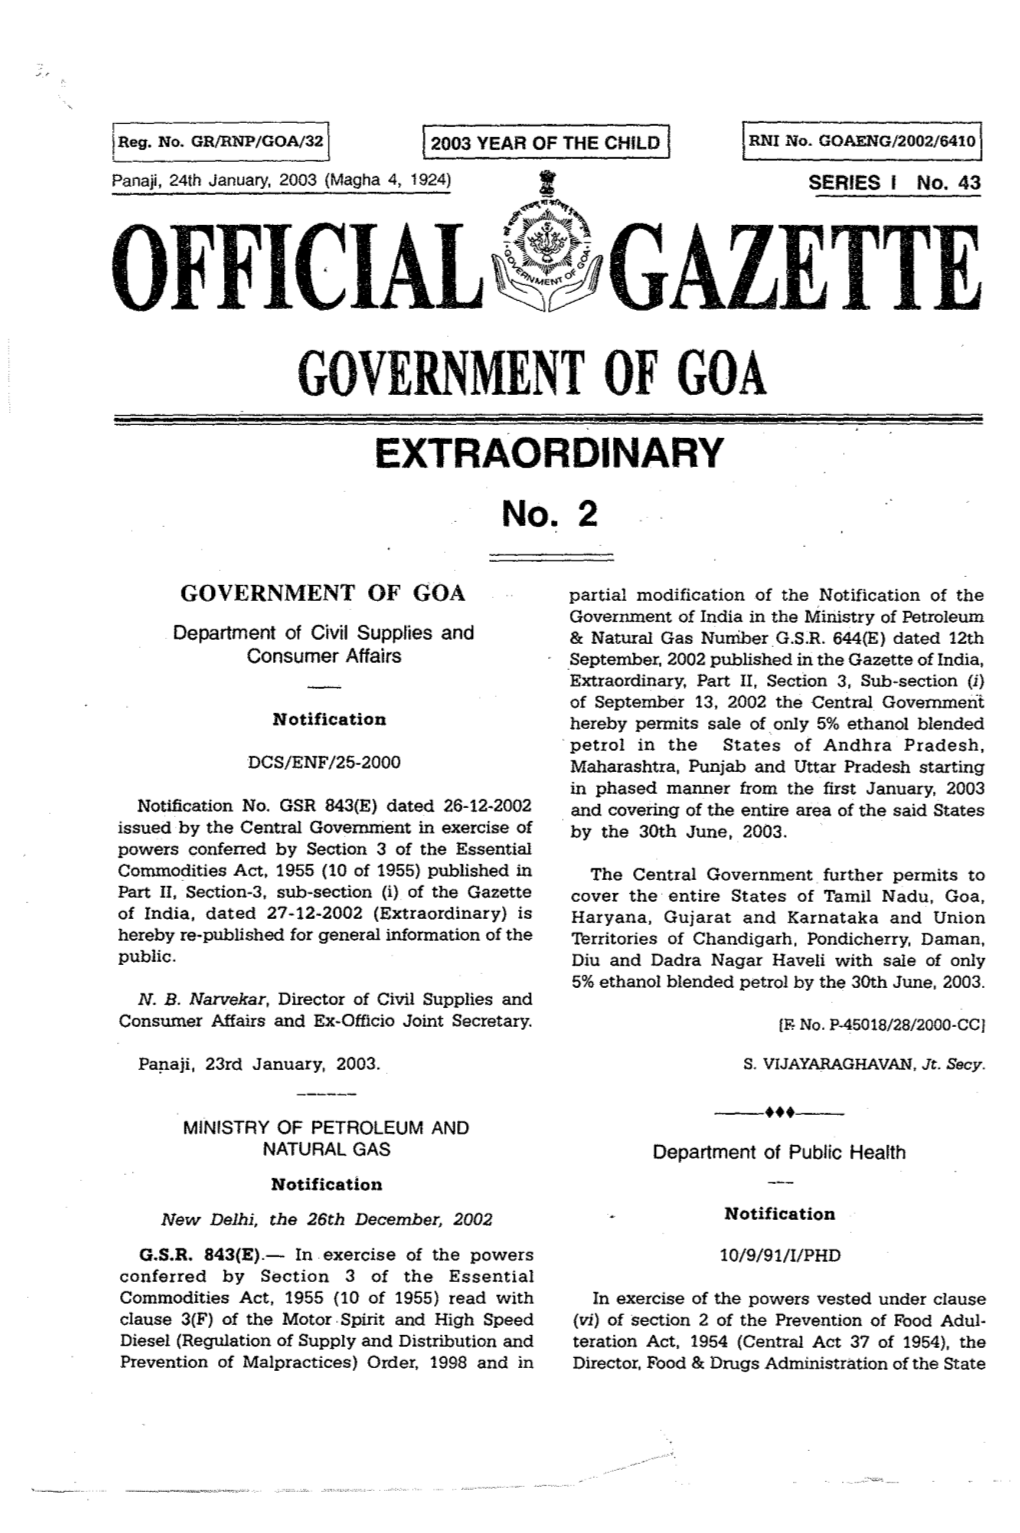 GAZETTE GOVERNMENT of GOA EXTRAORDINARY No